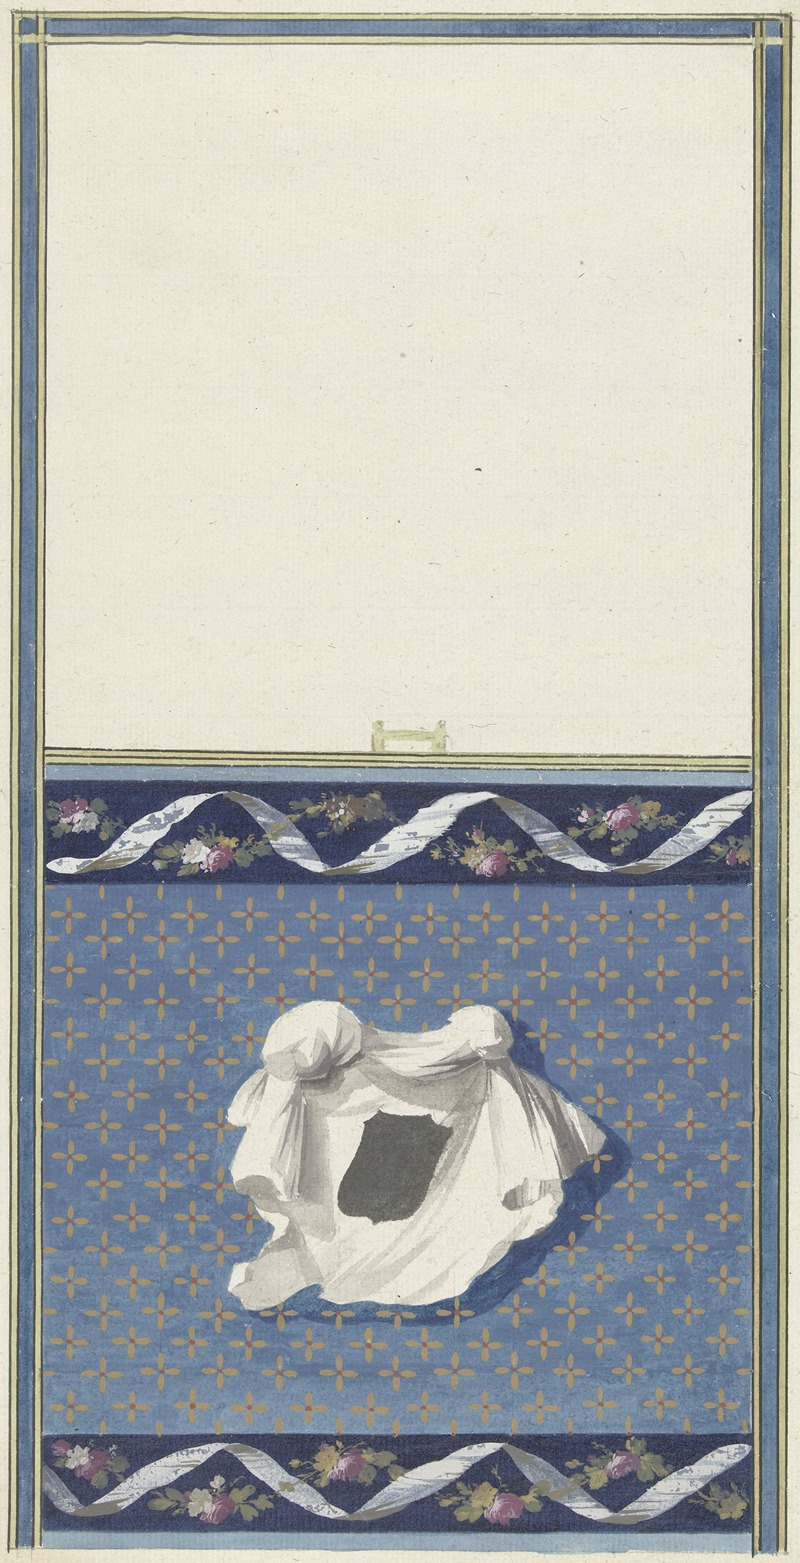 Abraham Meertens - Ontwerp voor kamerversiering met verticaal twee panelen, de onderste met een witte doek op een sterrenfond